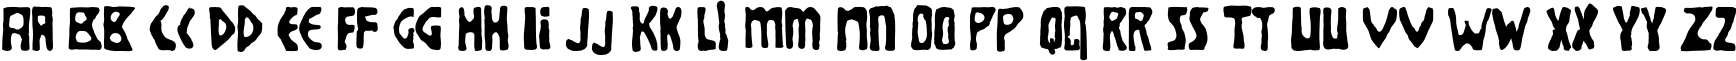 Пример написания английского алфавита шрифтом Brolga